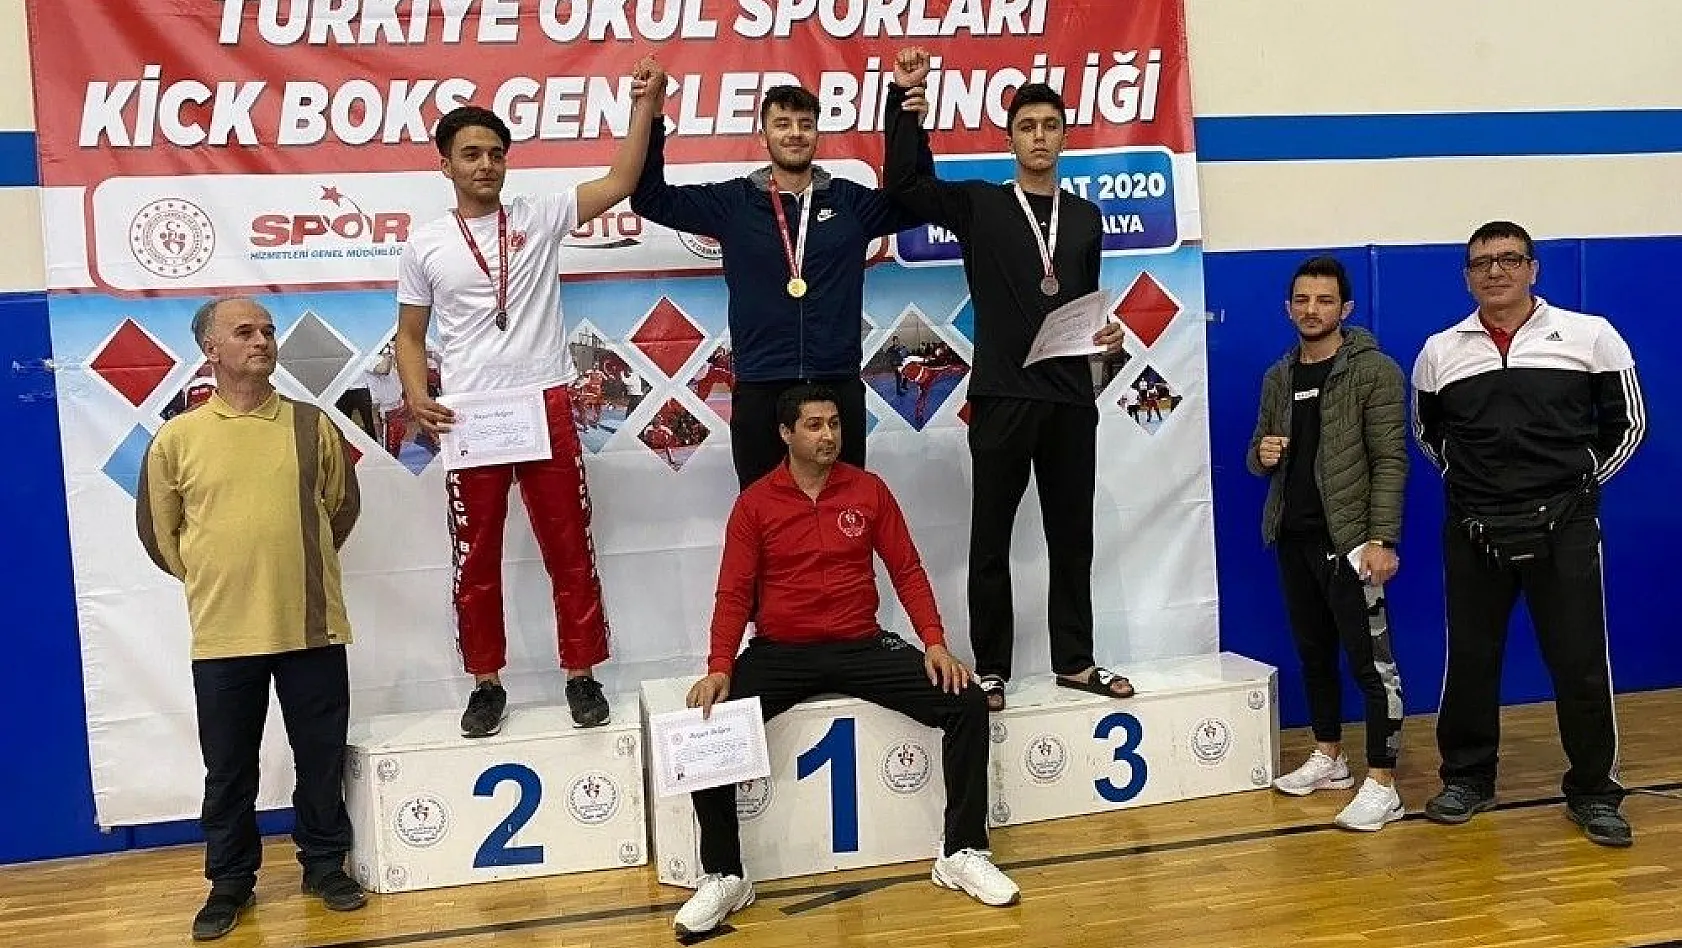 Develili sporcu Kickboks Türkiye Şampiyonasında 3. Oldu
